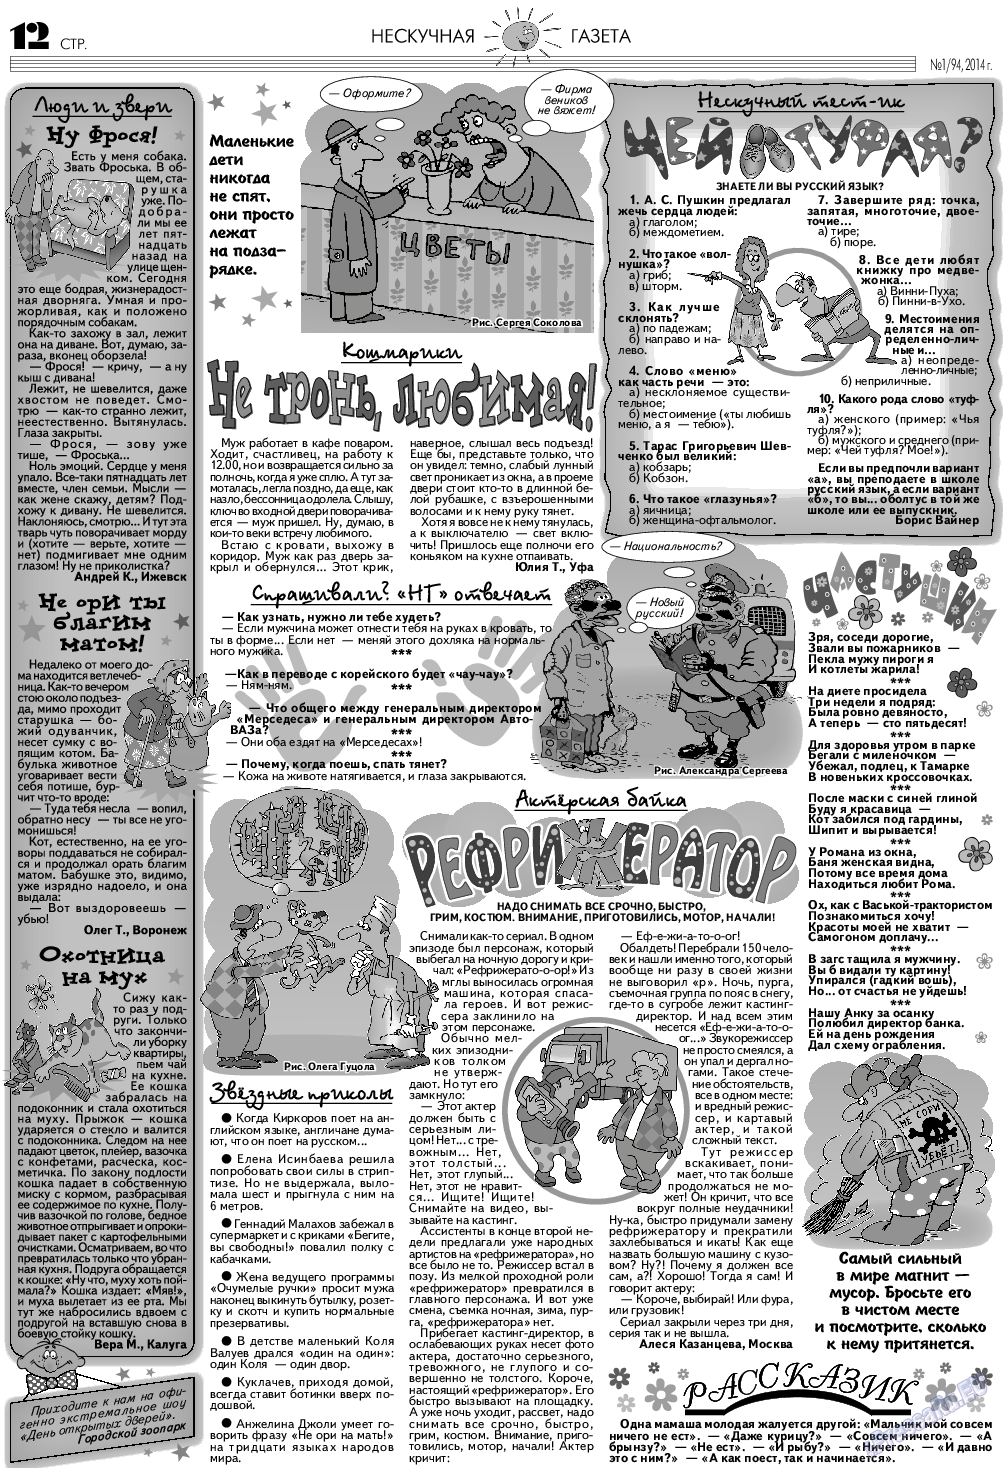 Нескучная газета (журнал). 2014 год, номер 1, стр. 12